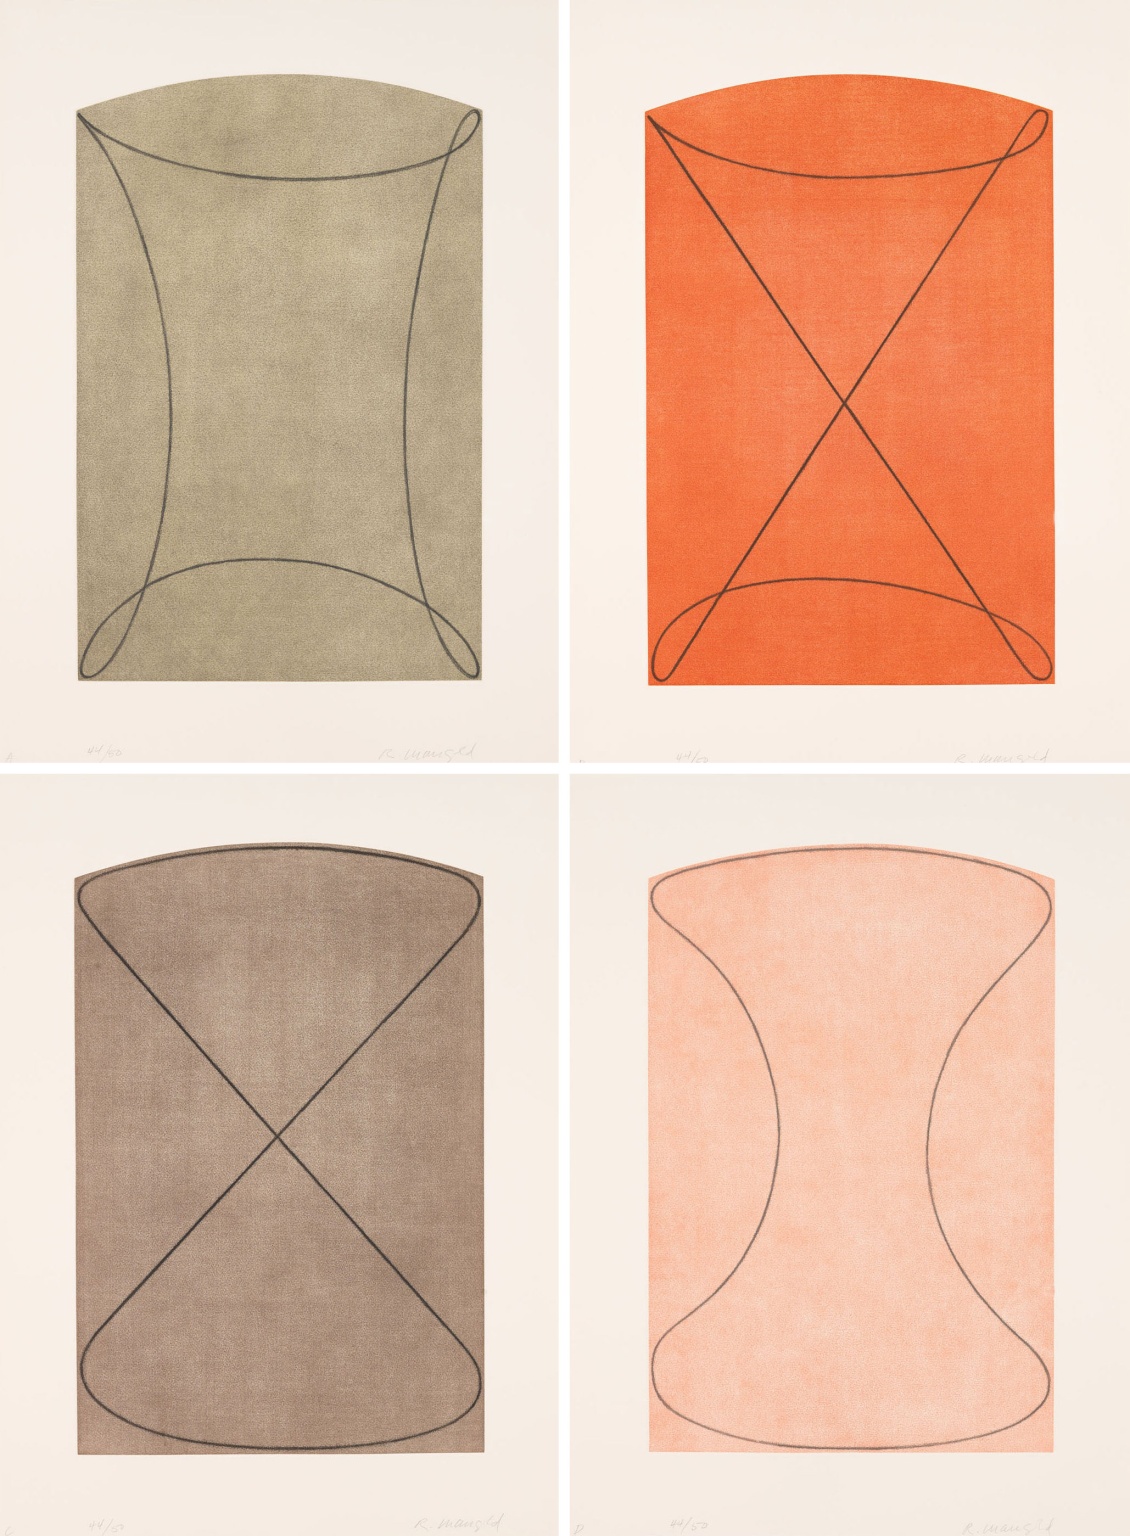 "Four Figures (A,B,C,D)" (1998) by Robert Mangold